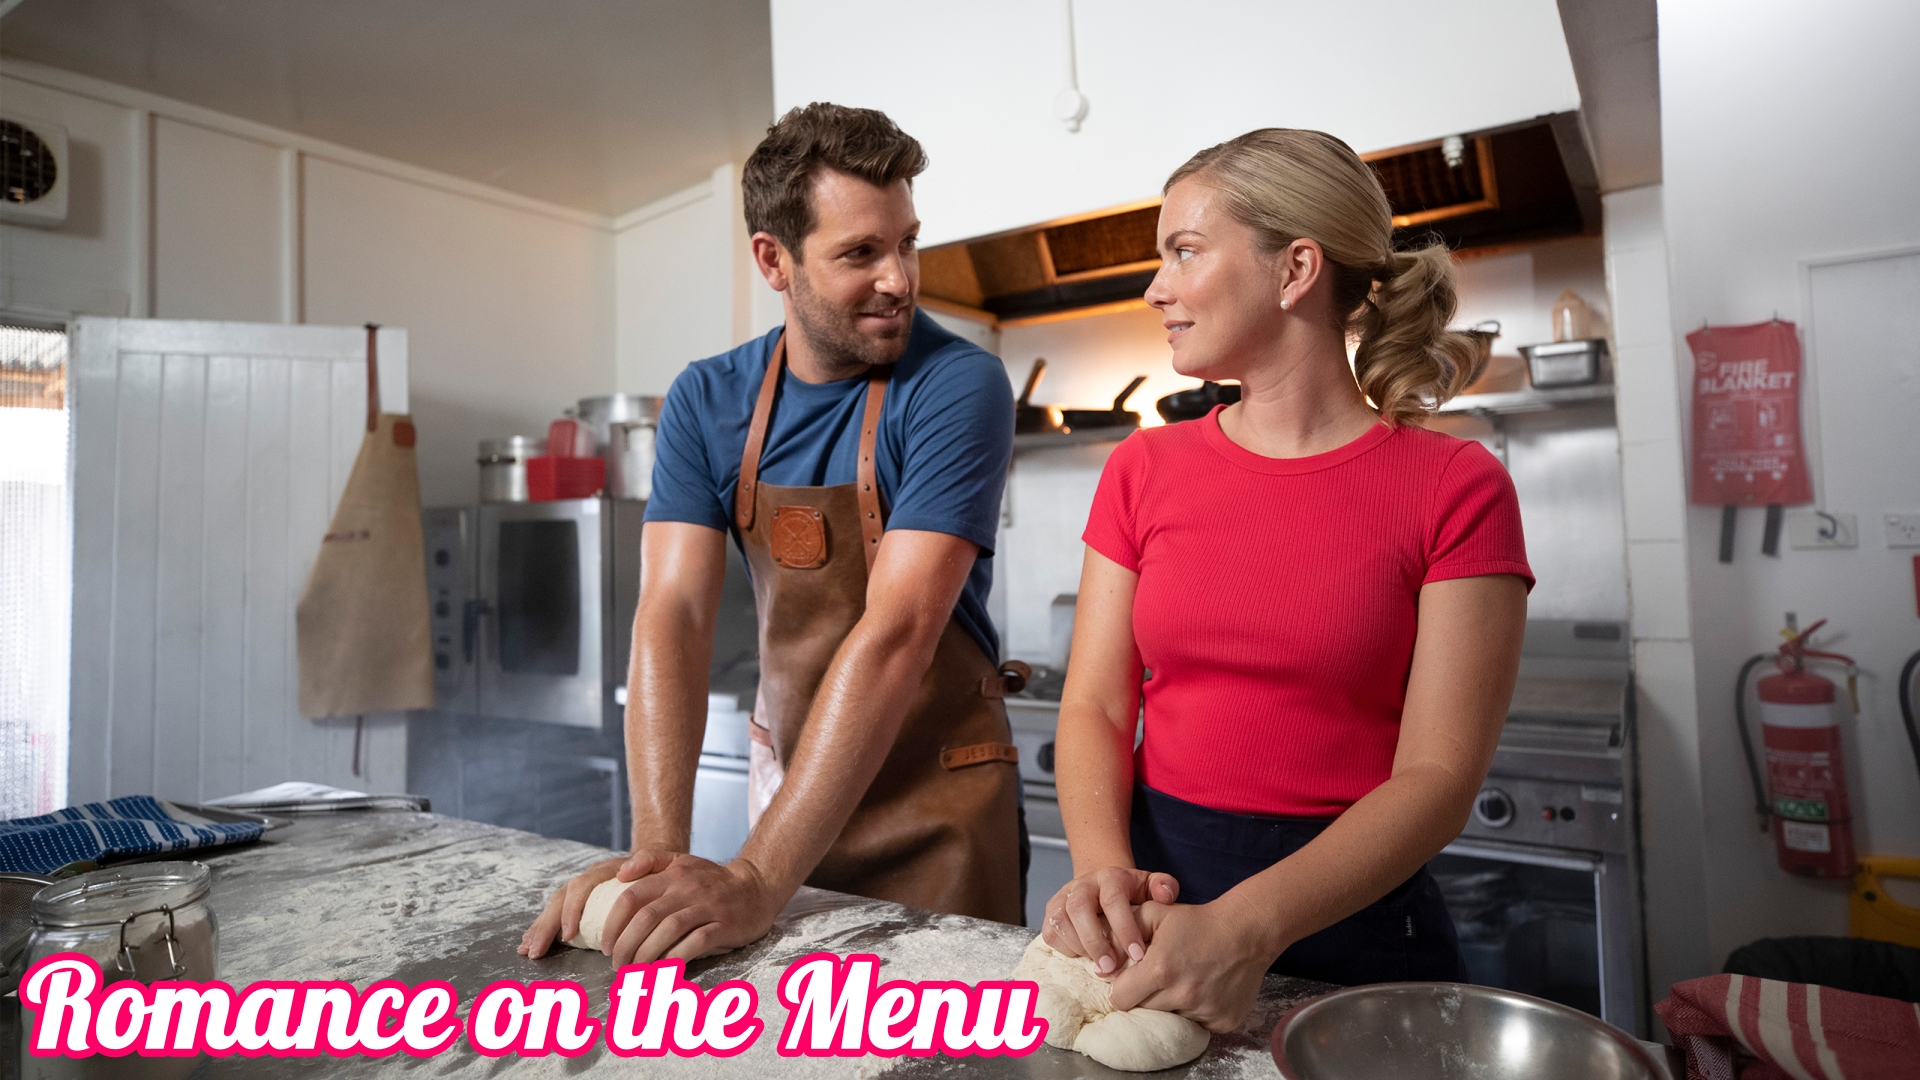 Koken en bakken met Romance on the menu